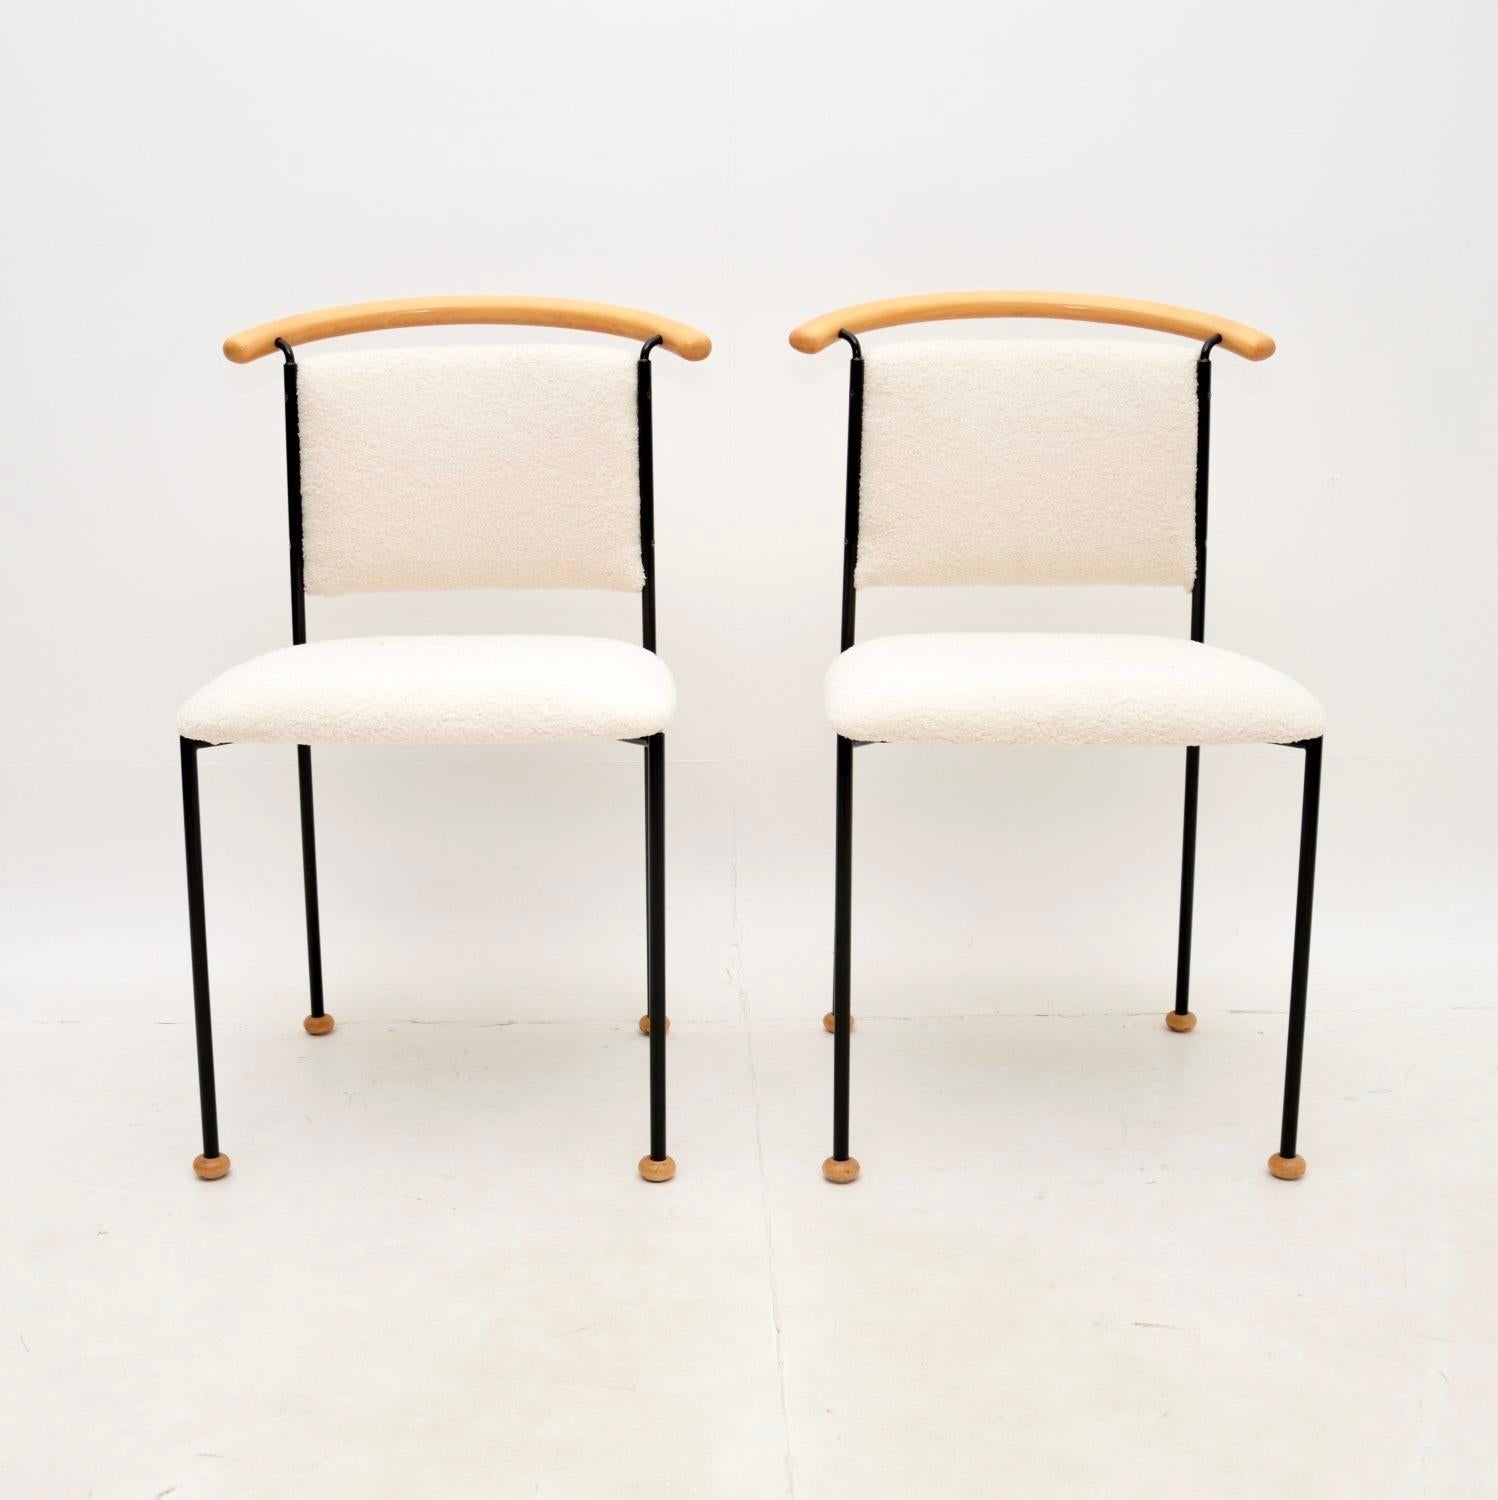 Ein sehr interessantes und stilvolles Paar italienischer Beistellstühle im Vintage-Stil. Sie wurden in Italien hergestellt und stammen aus den 1970-80er Jahren.

Sie sind von hervorragender Qualität und haben ein ausgefallenes und ungewöhnliches